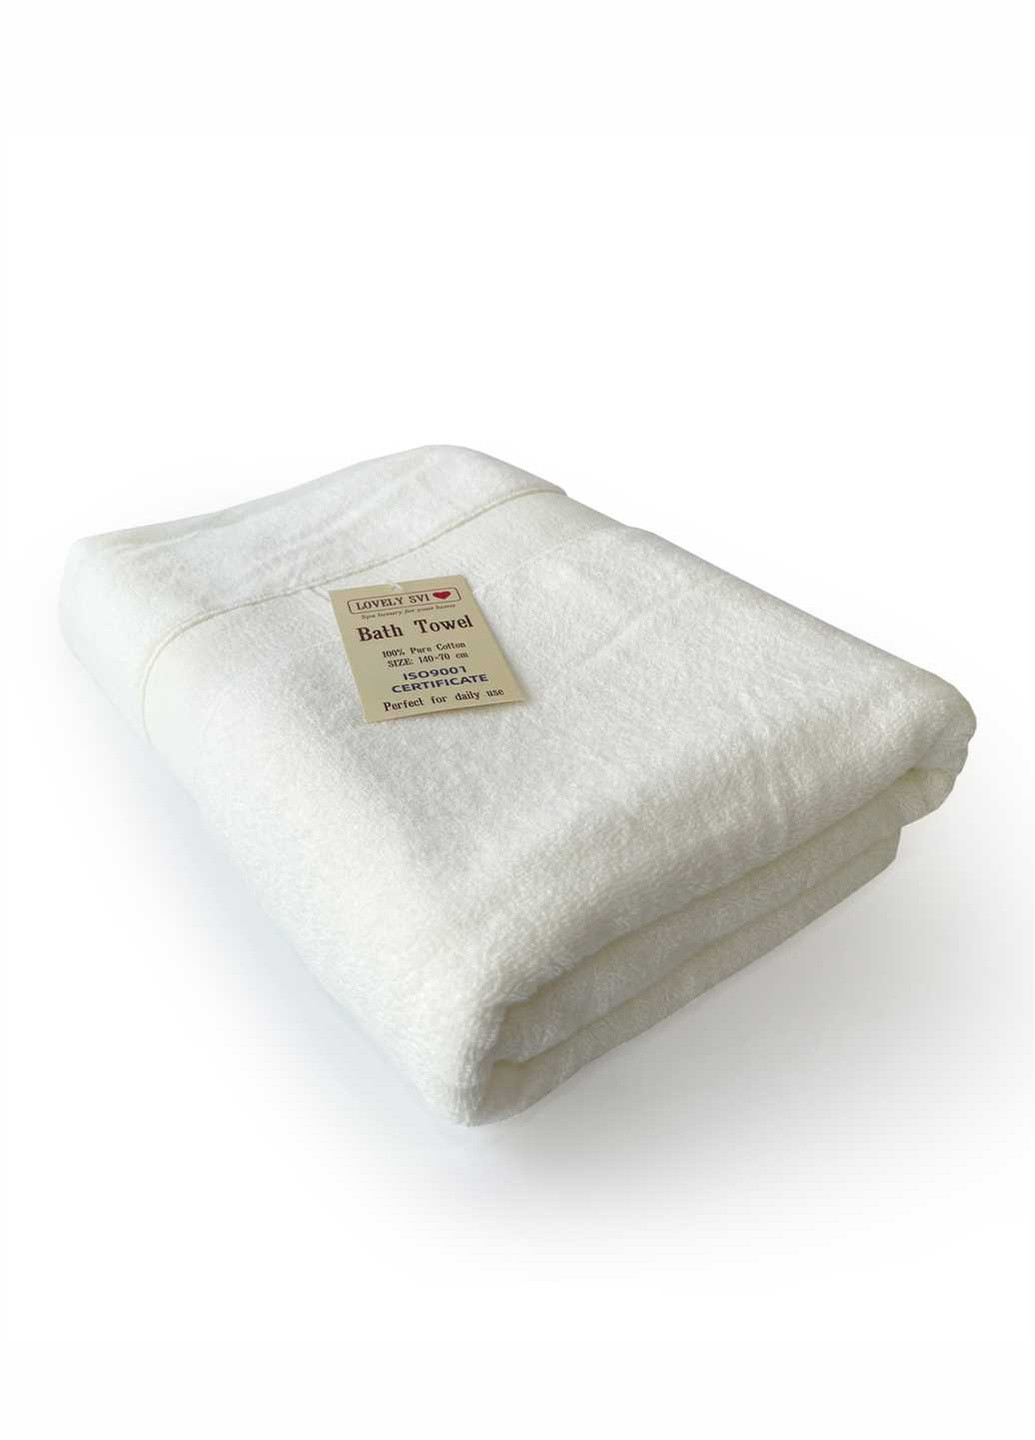 Lovely Svi полотенце махровое банное (хлопок) в подарочном пакете размер: 70 на 140 см бежевый однотонный бежевый производство - Китай